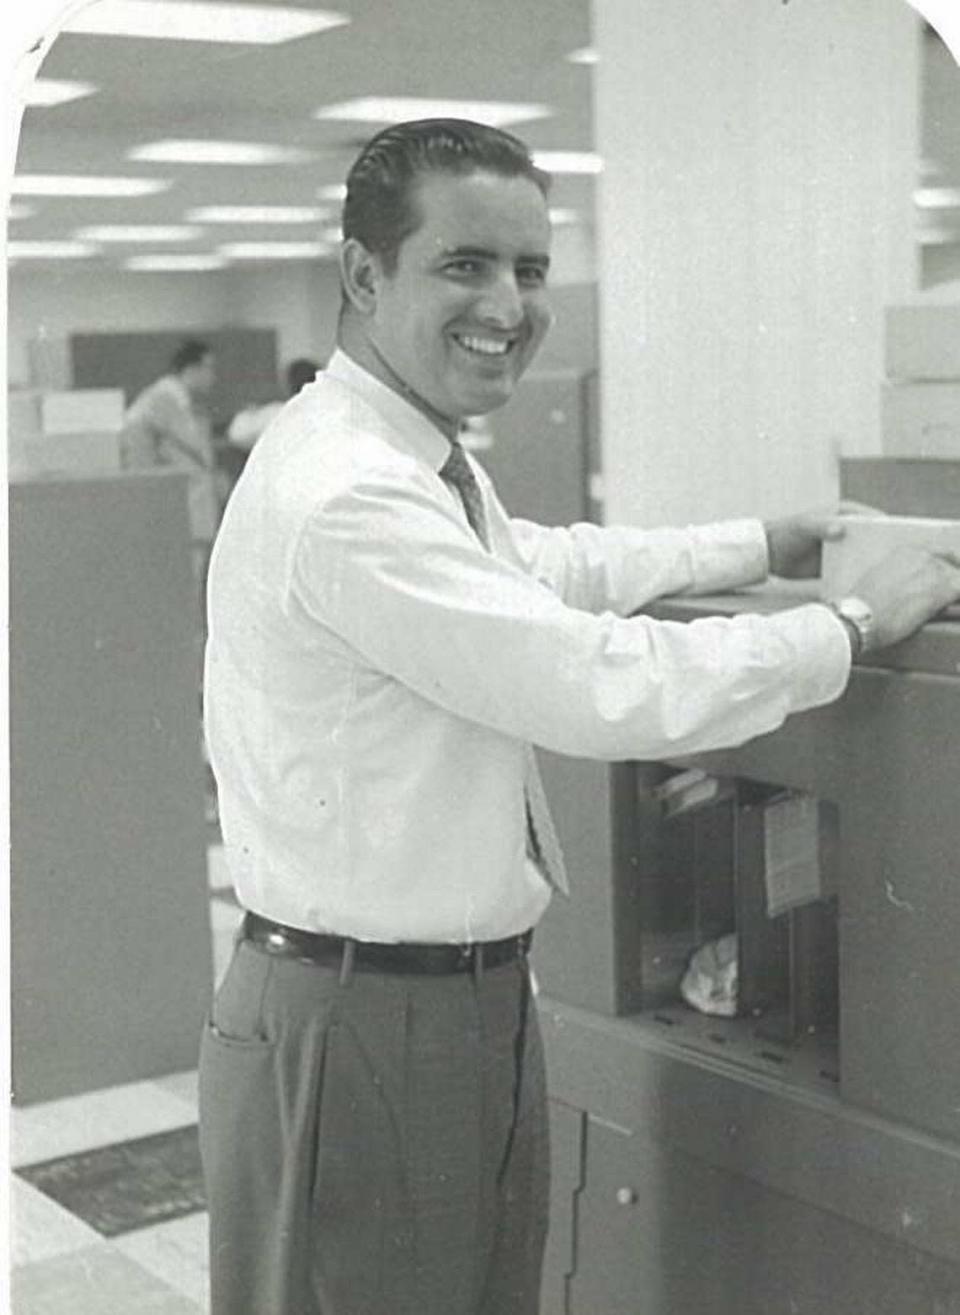 Antonio San Pedro aprendió y manejó una de los primeras computadoras contables de IBM en Cuba, mientras trabajaba en La Compañía de la Electricidad en los años 50.